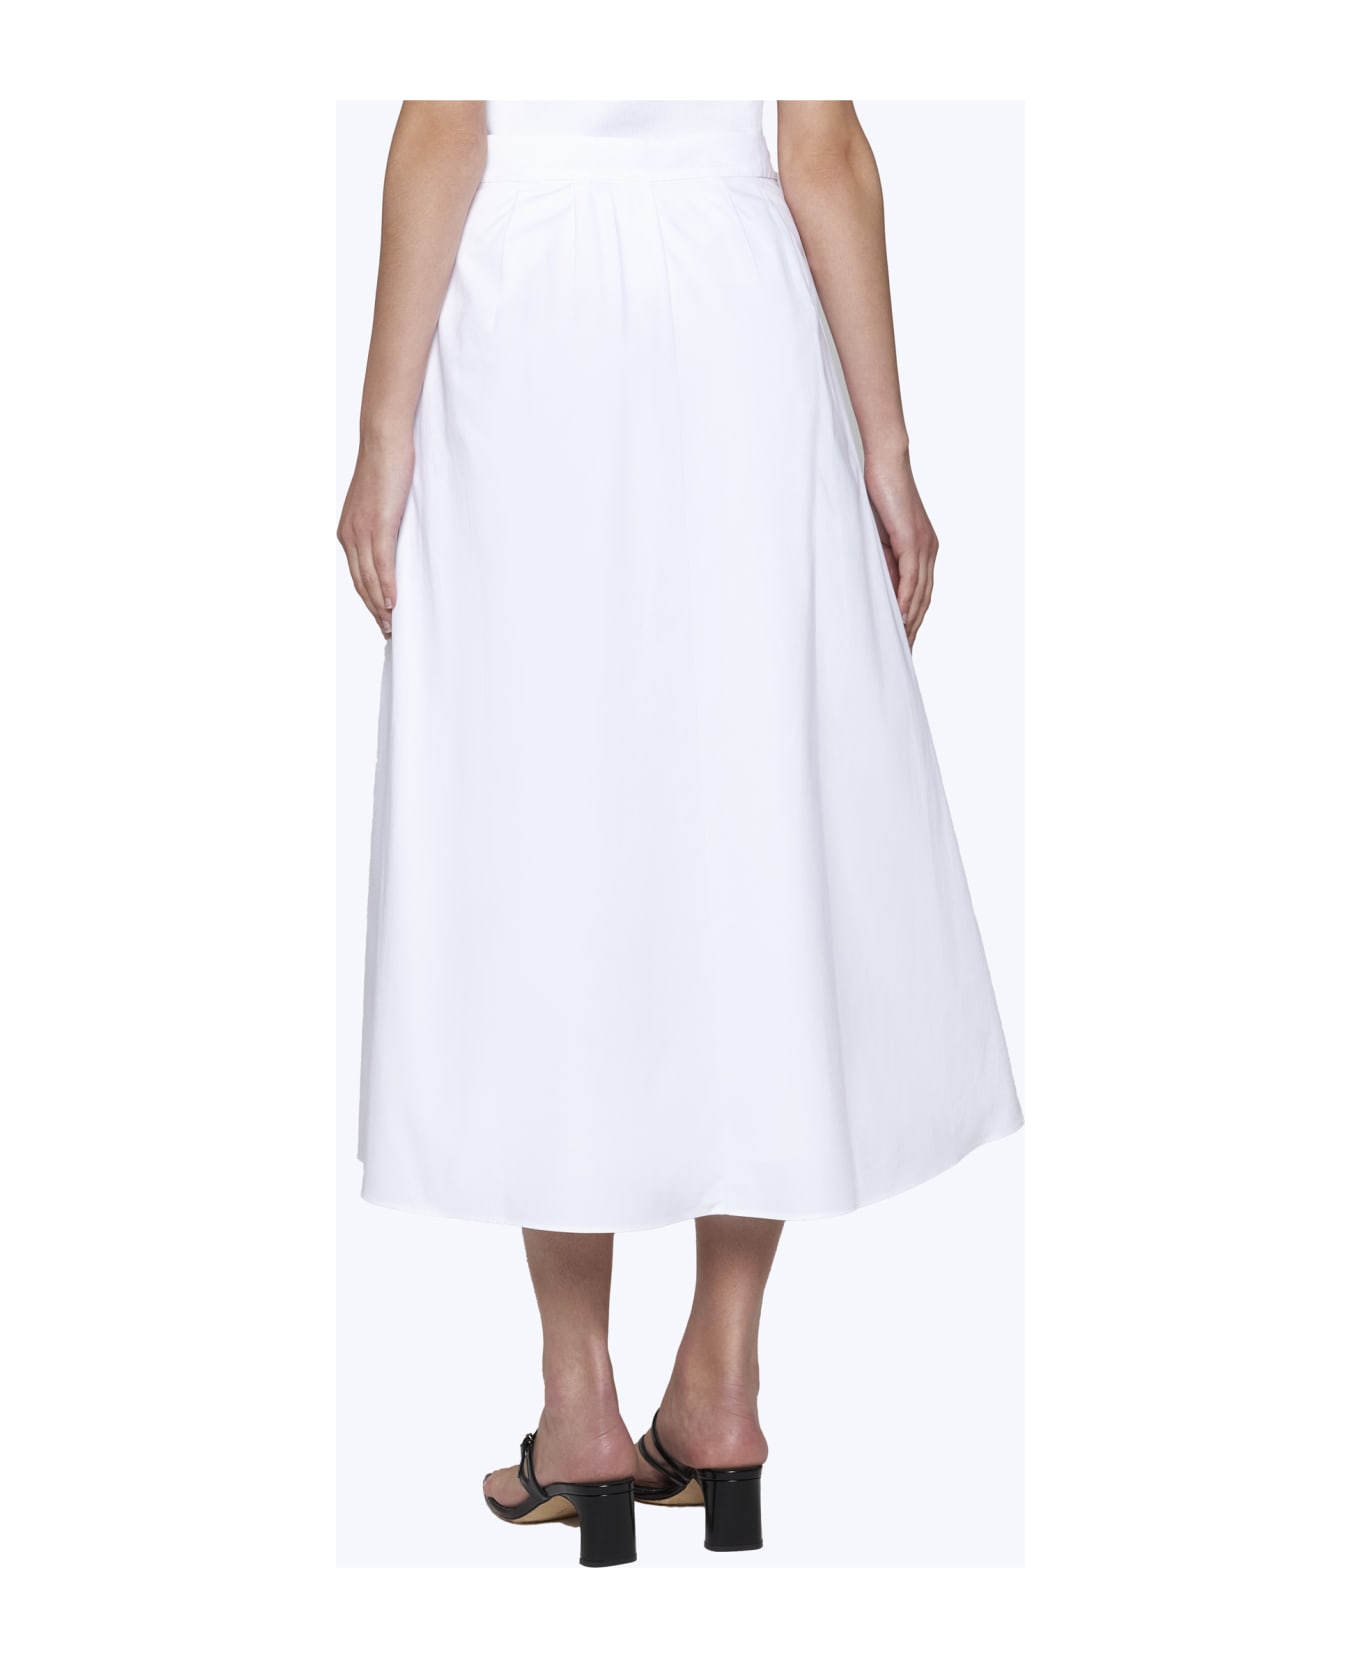 Róhe Skirt - White